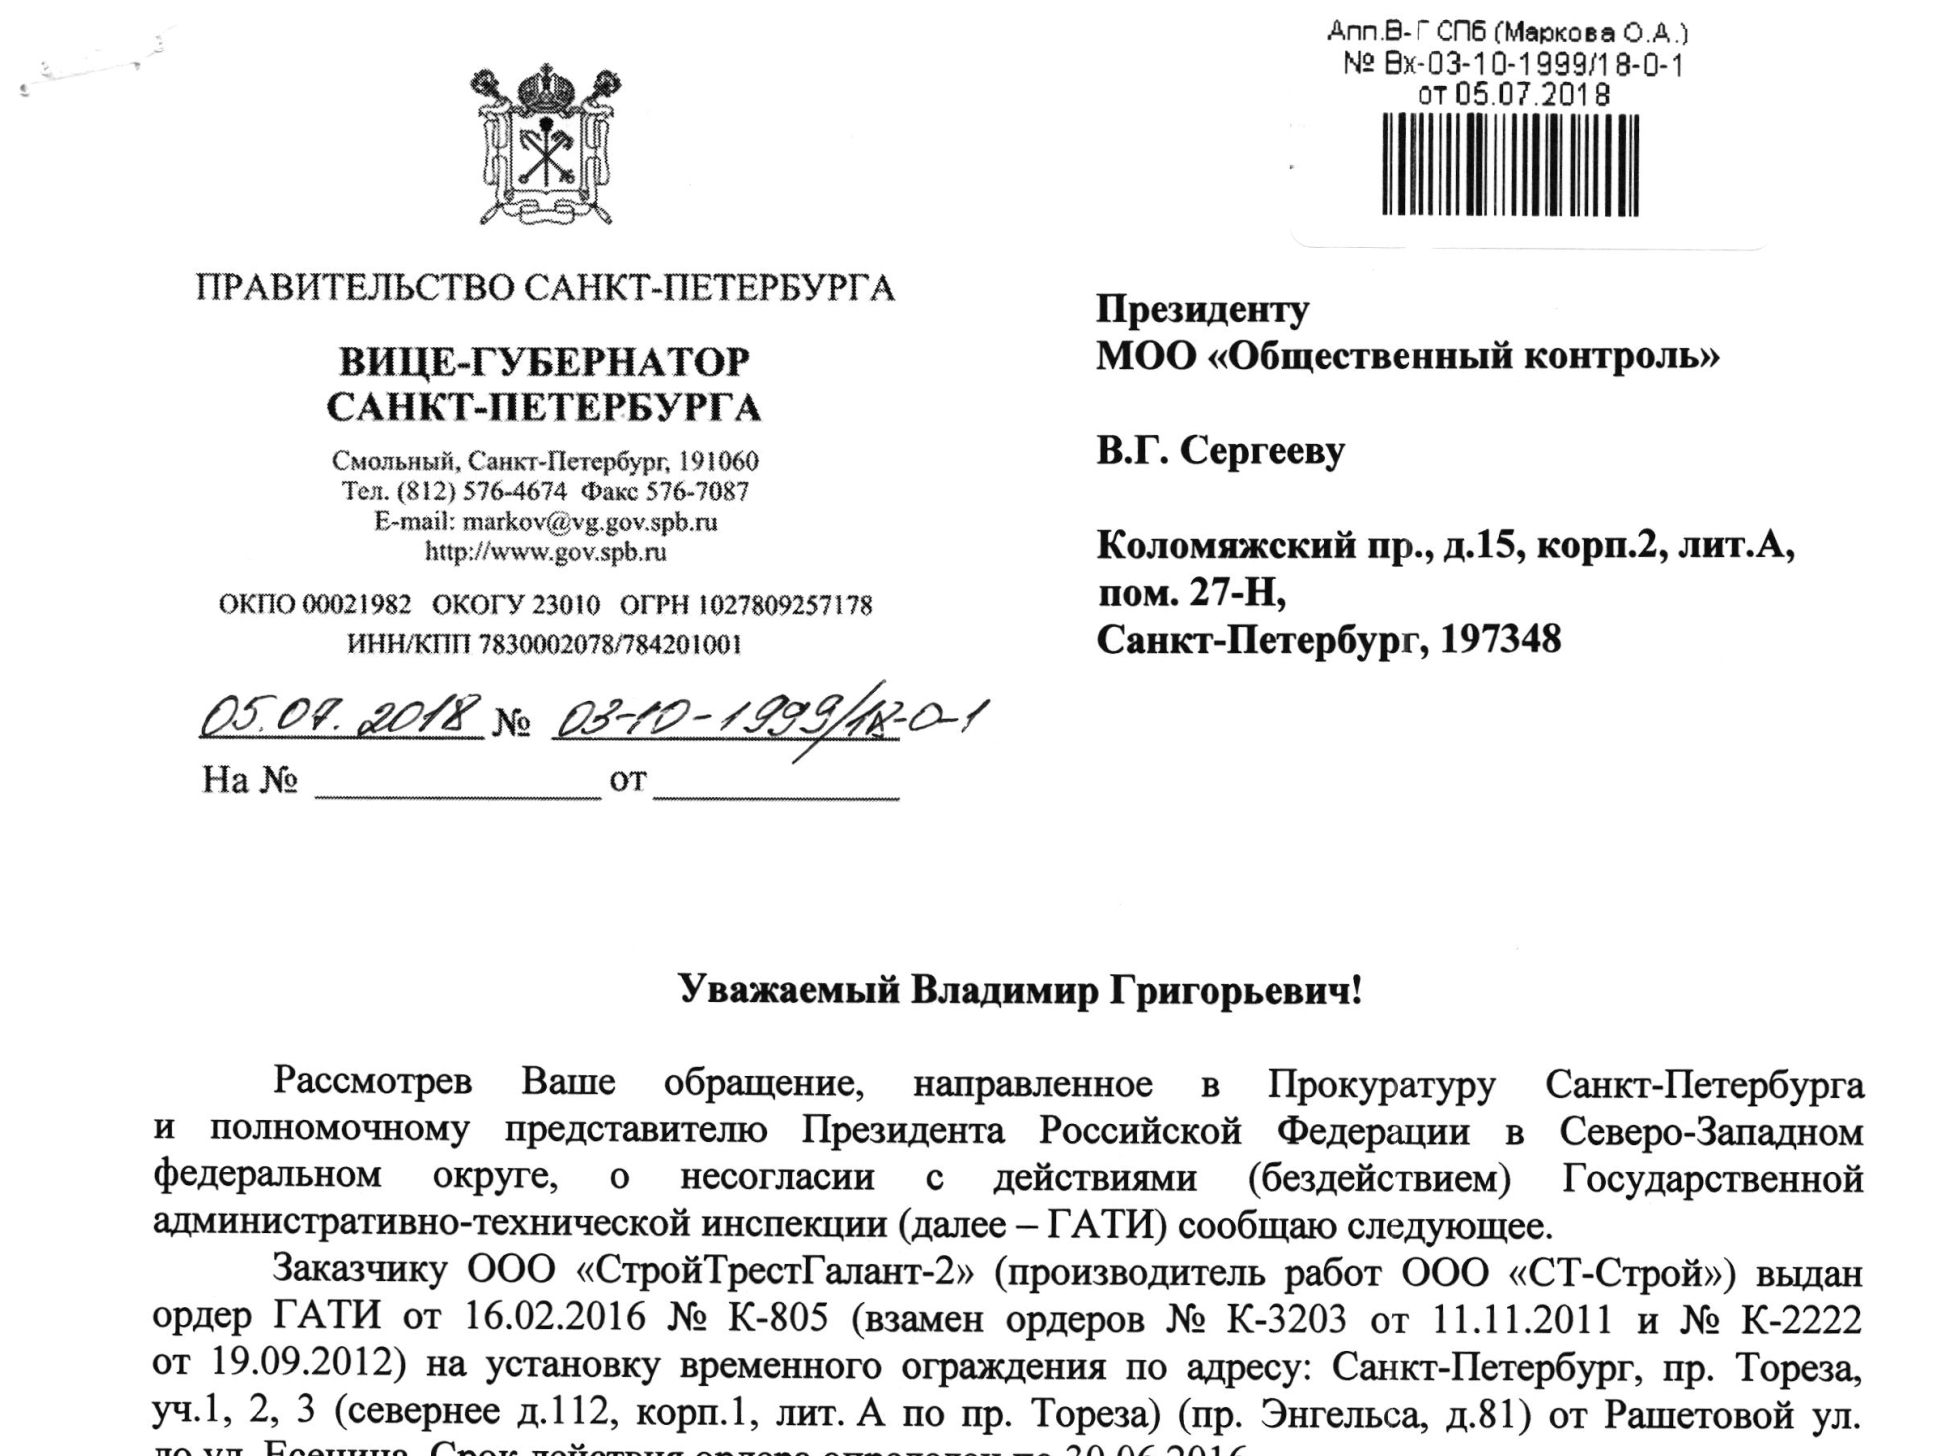 Ответ Вице-губернатора Санкт-Петербурга Маркова О.А. на обращение о несогласии с действиями (бездействием) ГАТИ Санкт-Петербурга.